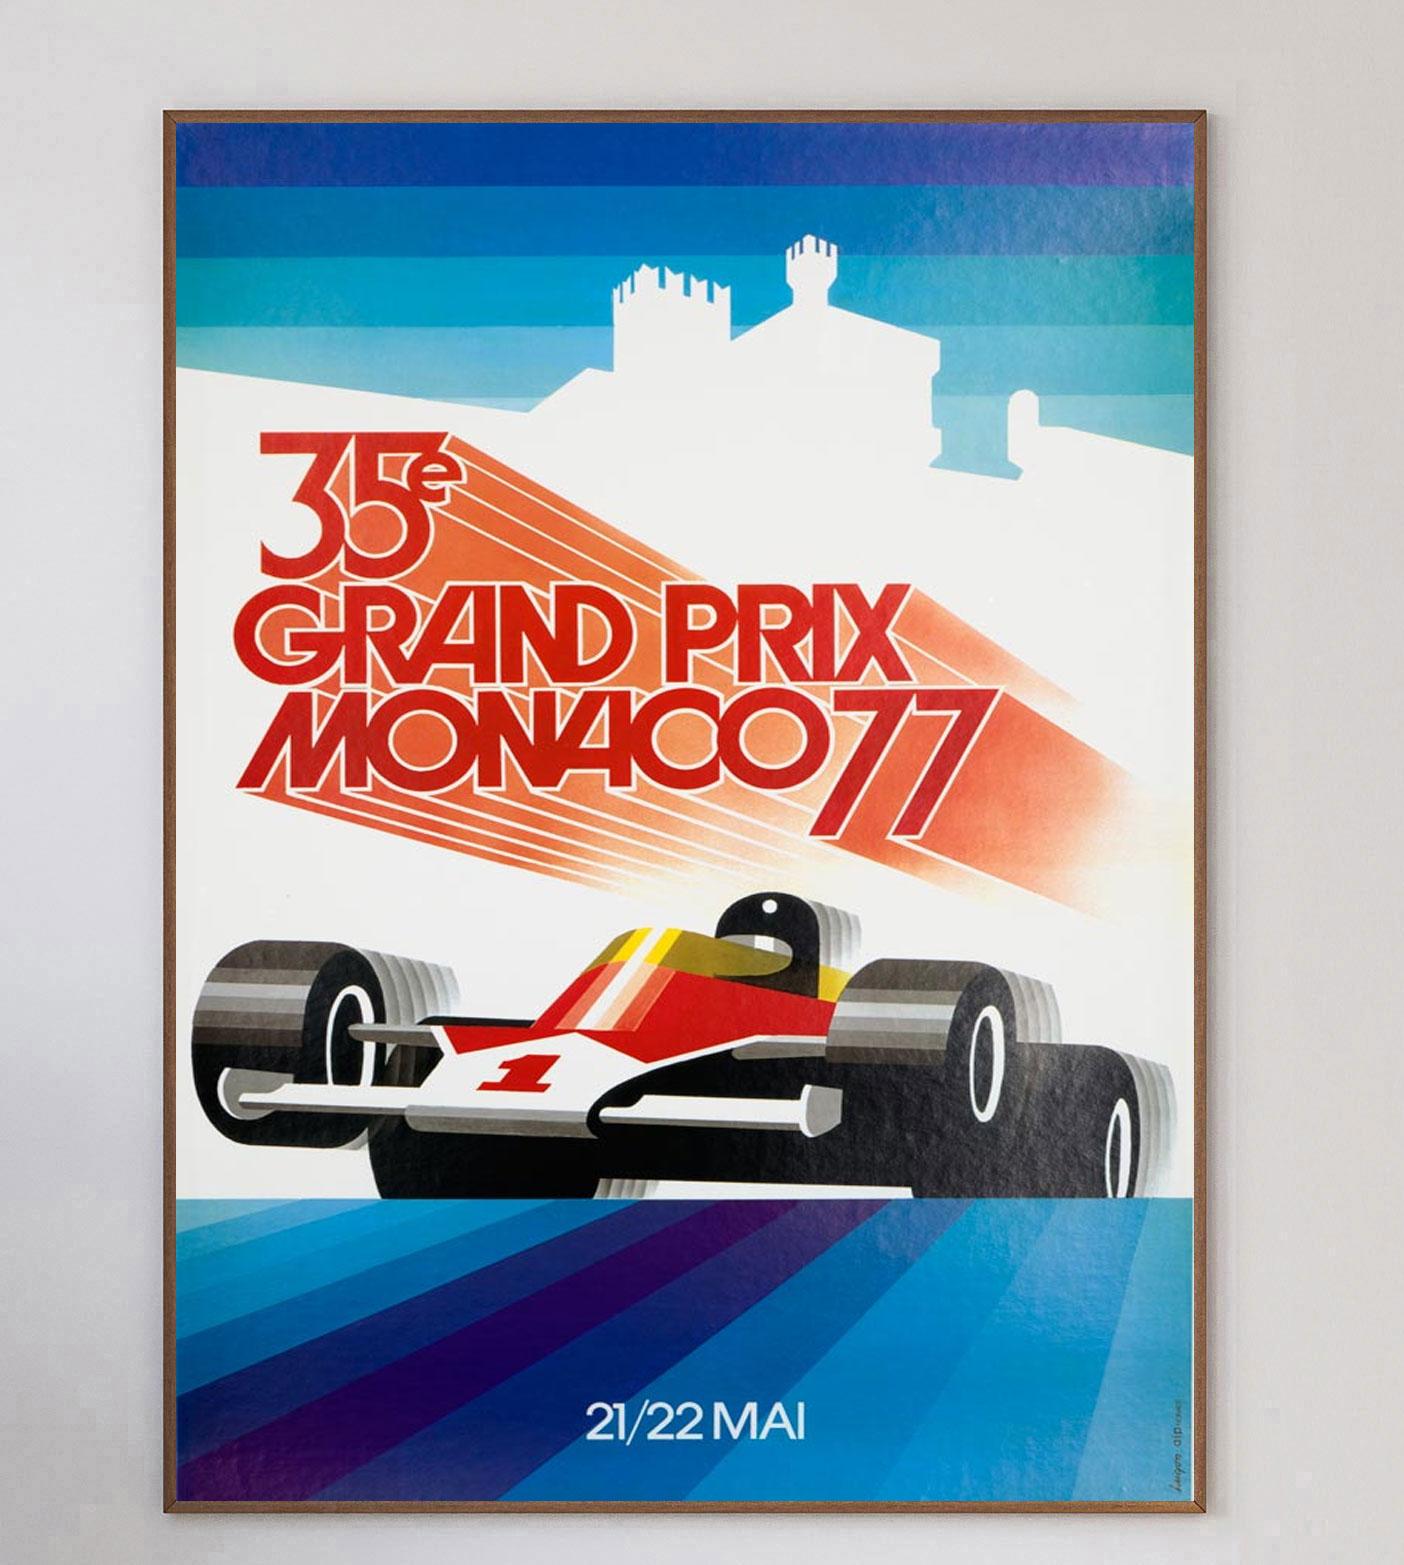 Dieses Plakat für den Großen Preis von Monaco 1977 wurde von Carpenter mit brillanten Illustrationen gestaltet. Das lebendige und moderne Artwork zeigt die Geschwindigkeit der Rennfahrer.

Der Große Preis von Monaco 1977 fand am 22. Mai 1977 statt